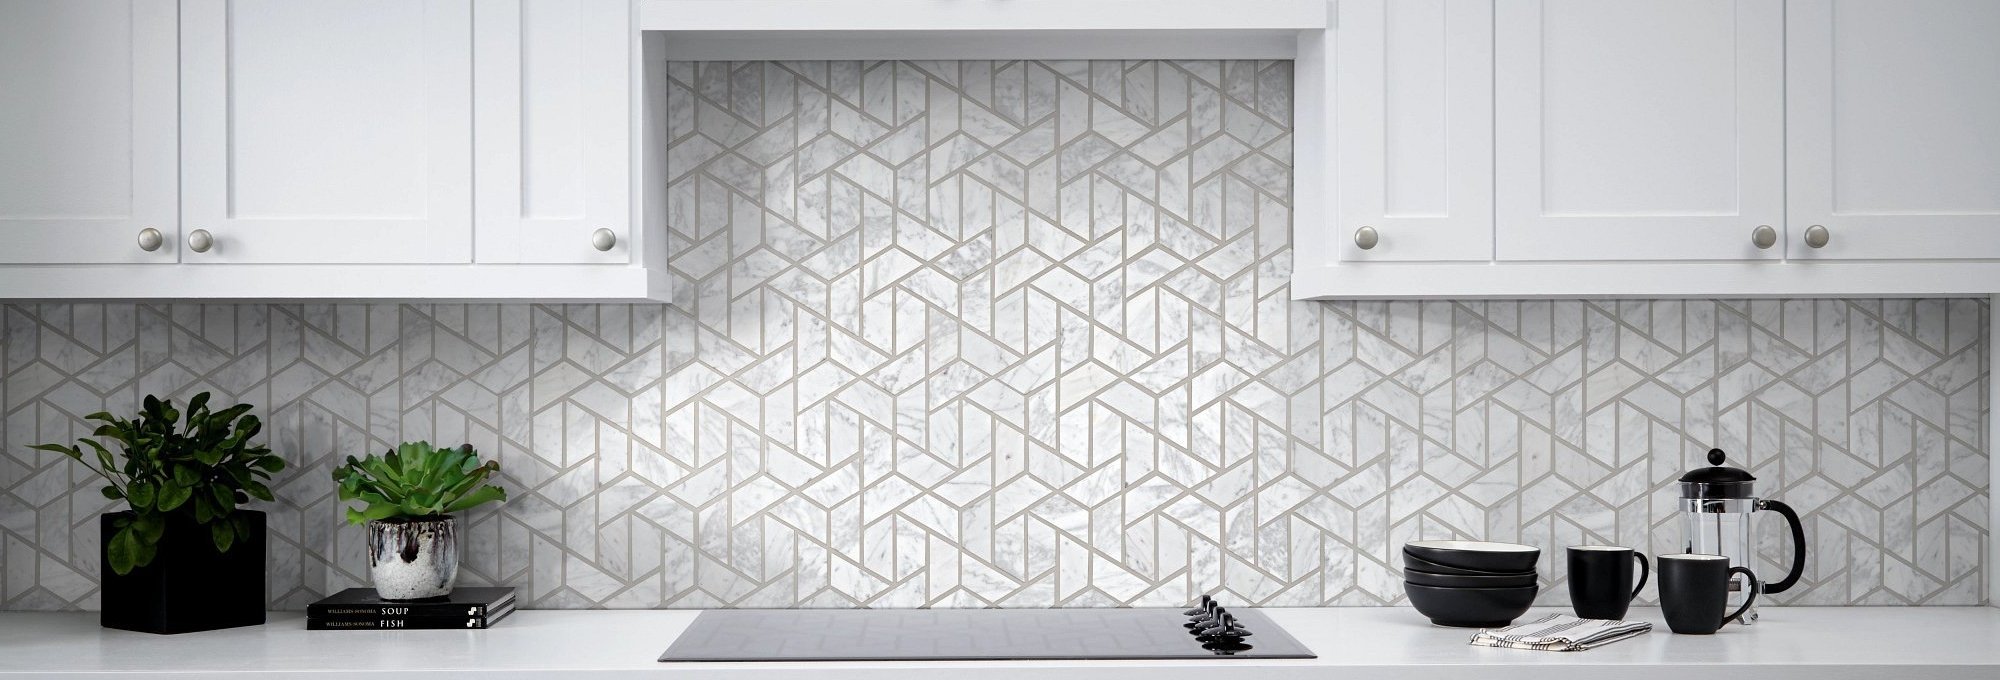 tiled kitchen backsplash from Anderson Tile & Carpet in Anderson, SC